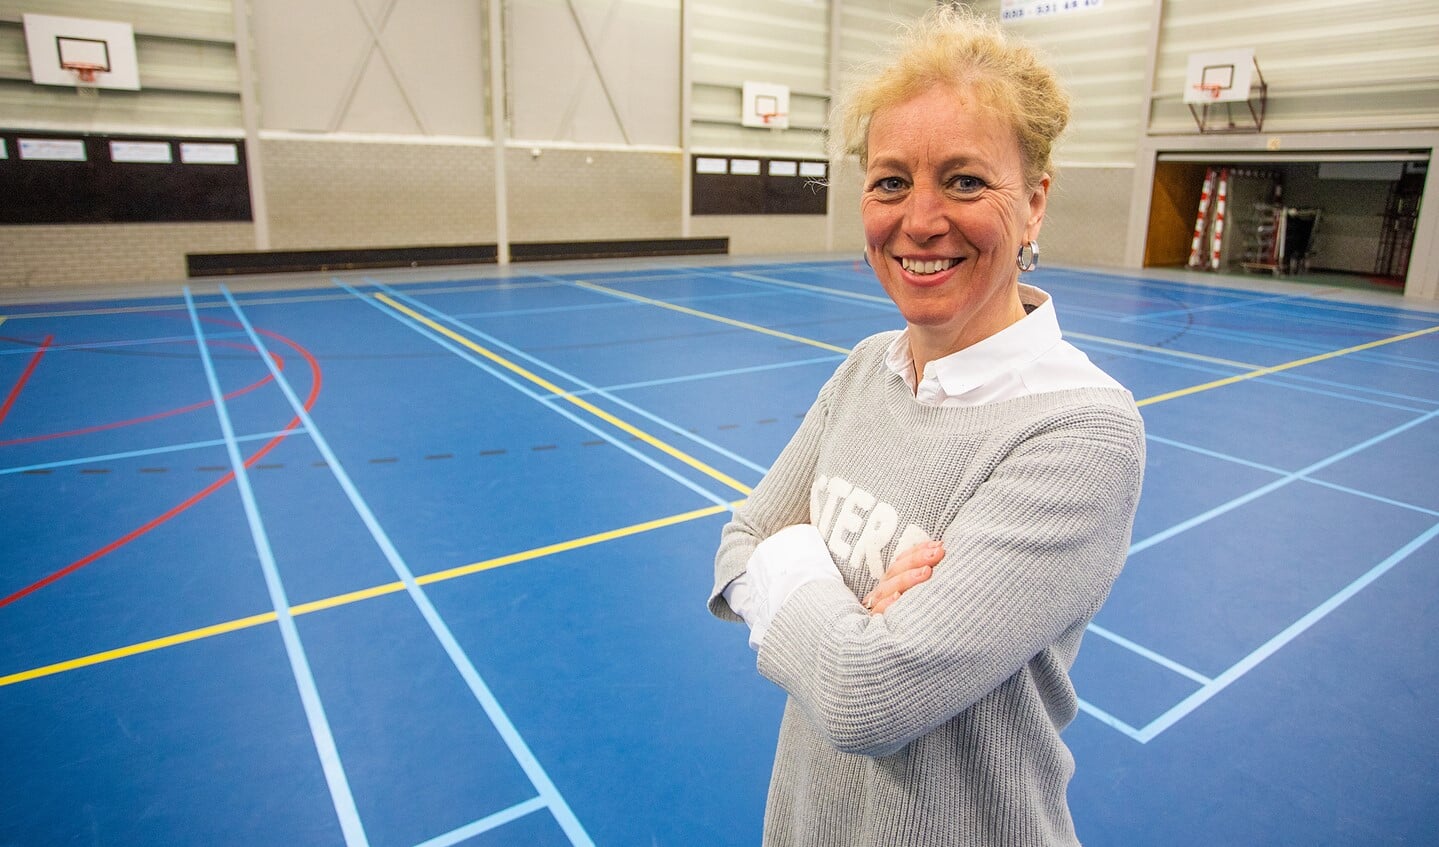 Sportformateur Marieke Pol begeleid het proces voor een lokaal sportakkoord.